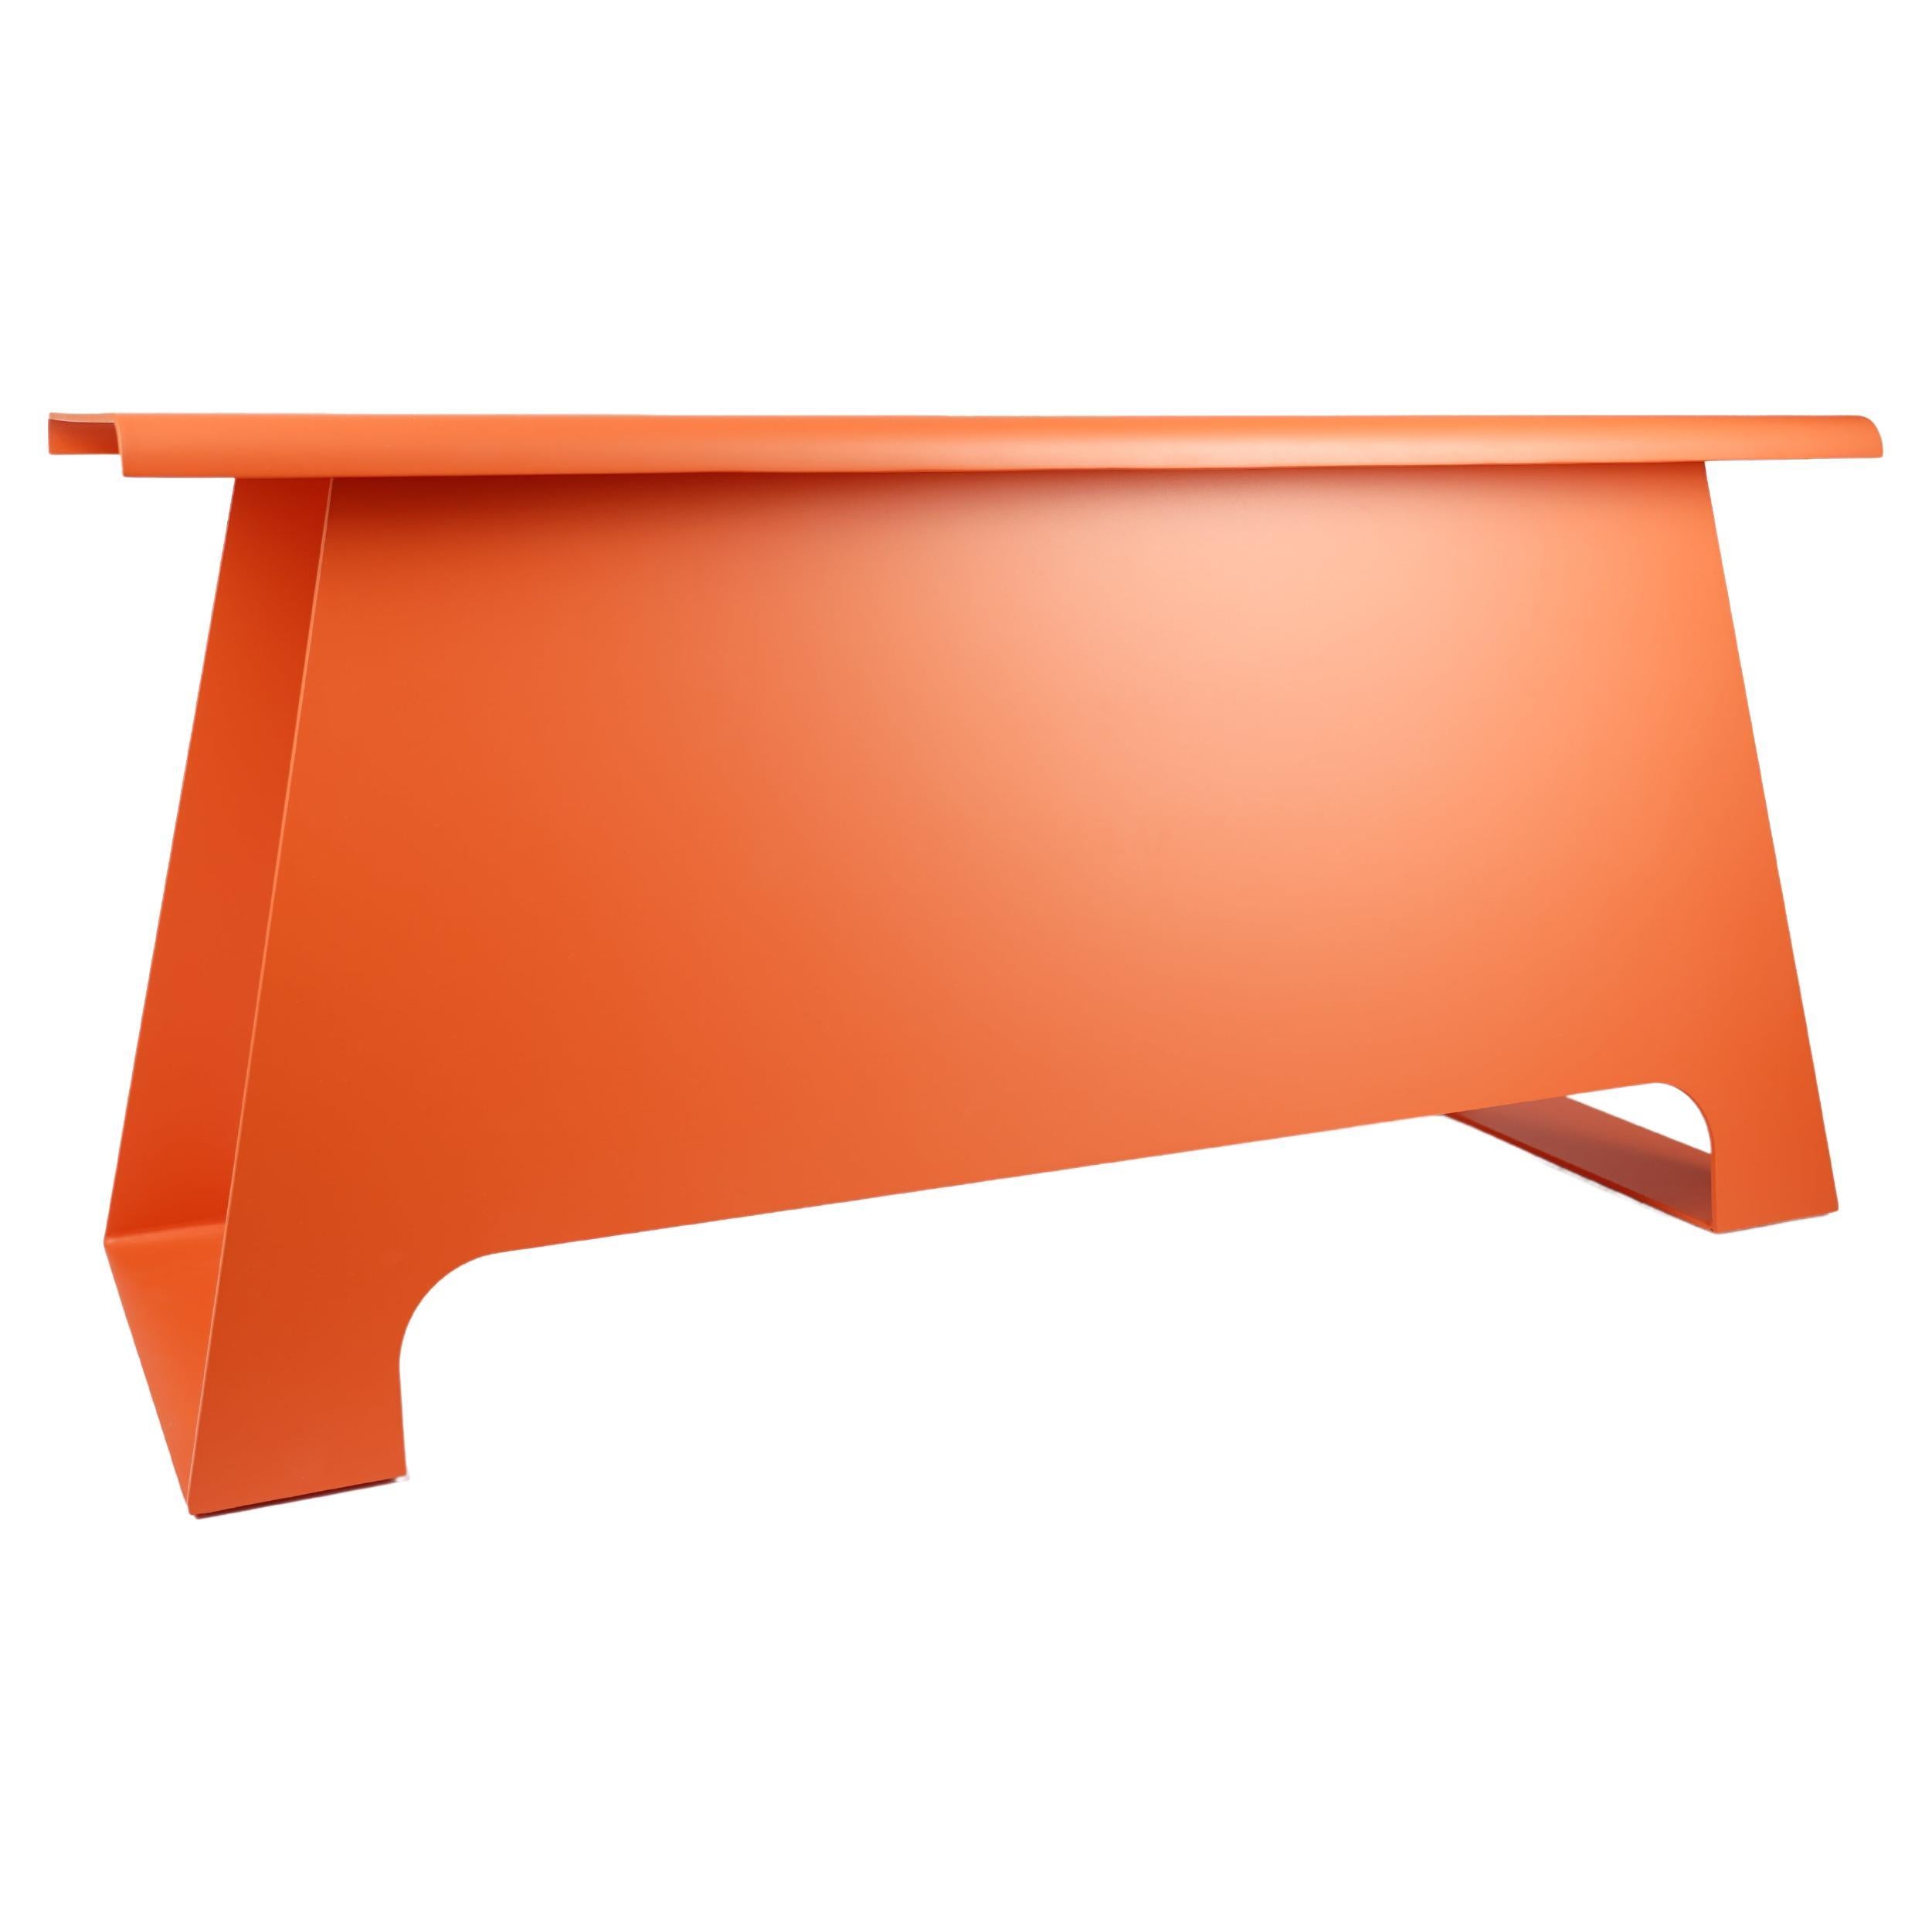 Contemporary Dutch Design Bank Beistelltisch Metall Indoor Outdoor/ Lachs Orange